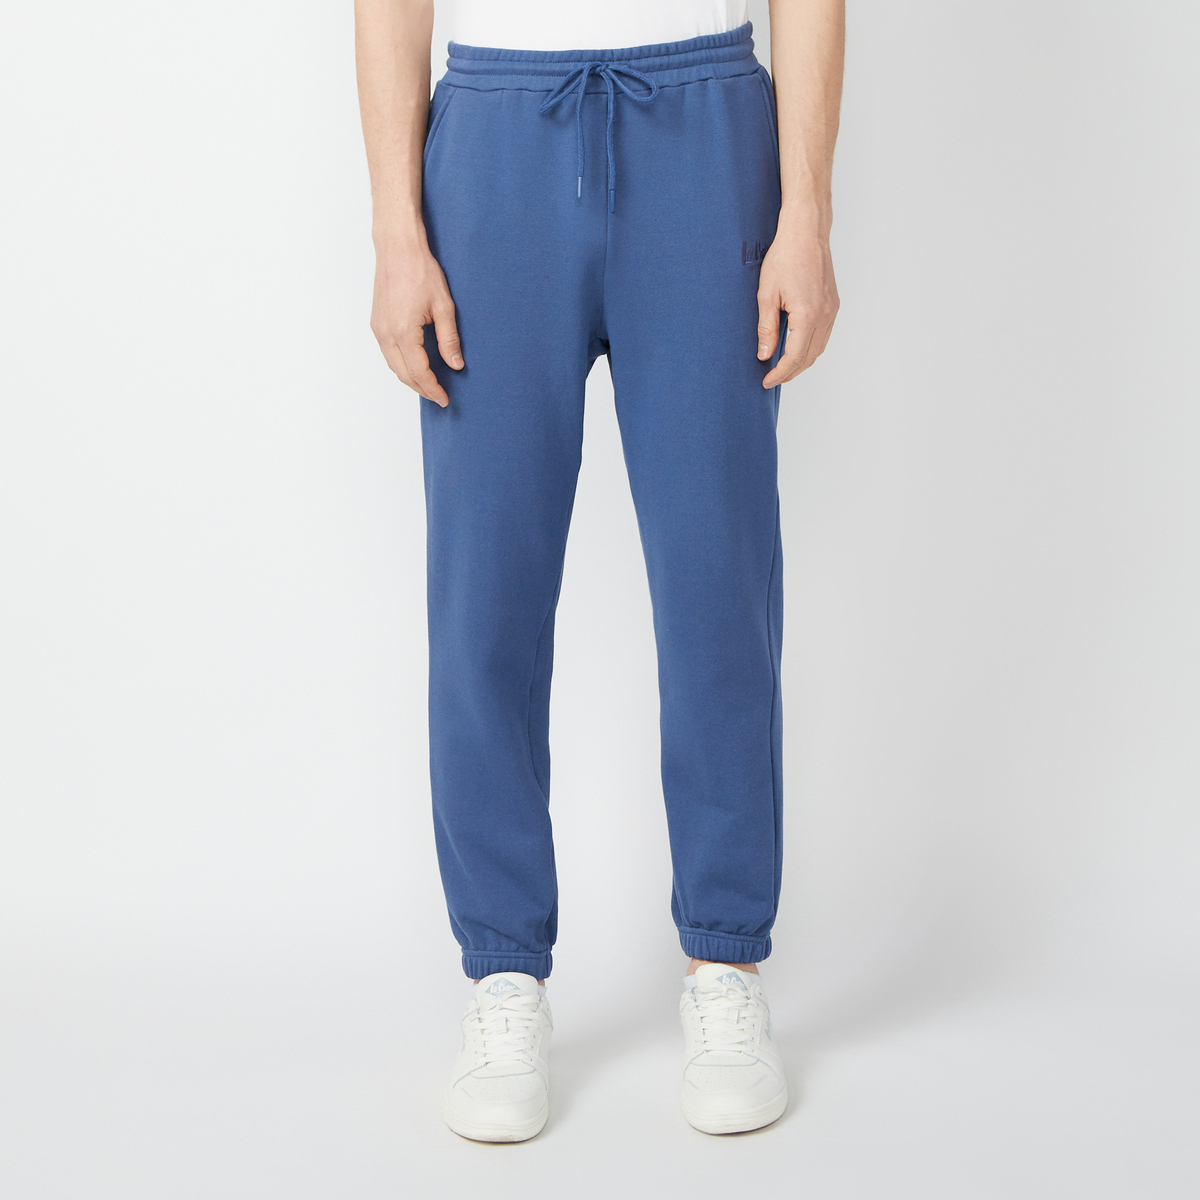 Спортивные брюки мужские Lee cooper LC-SWP-337MSS синие L